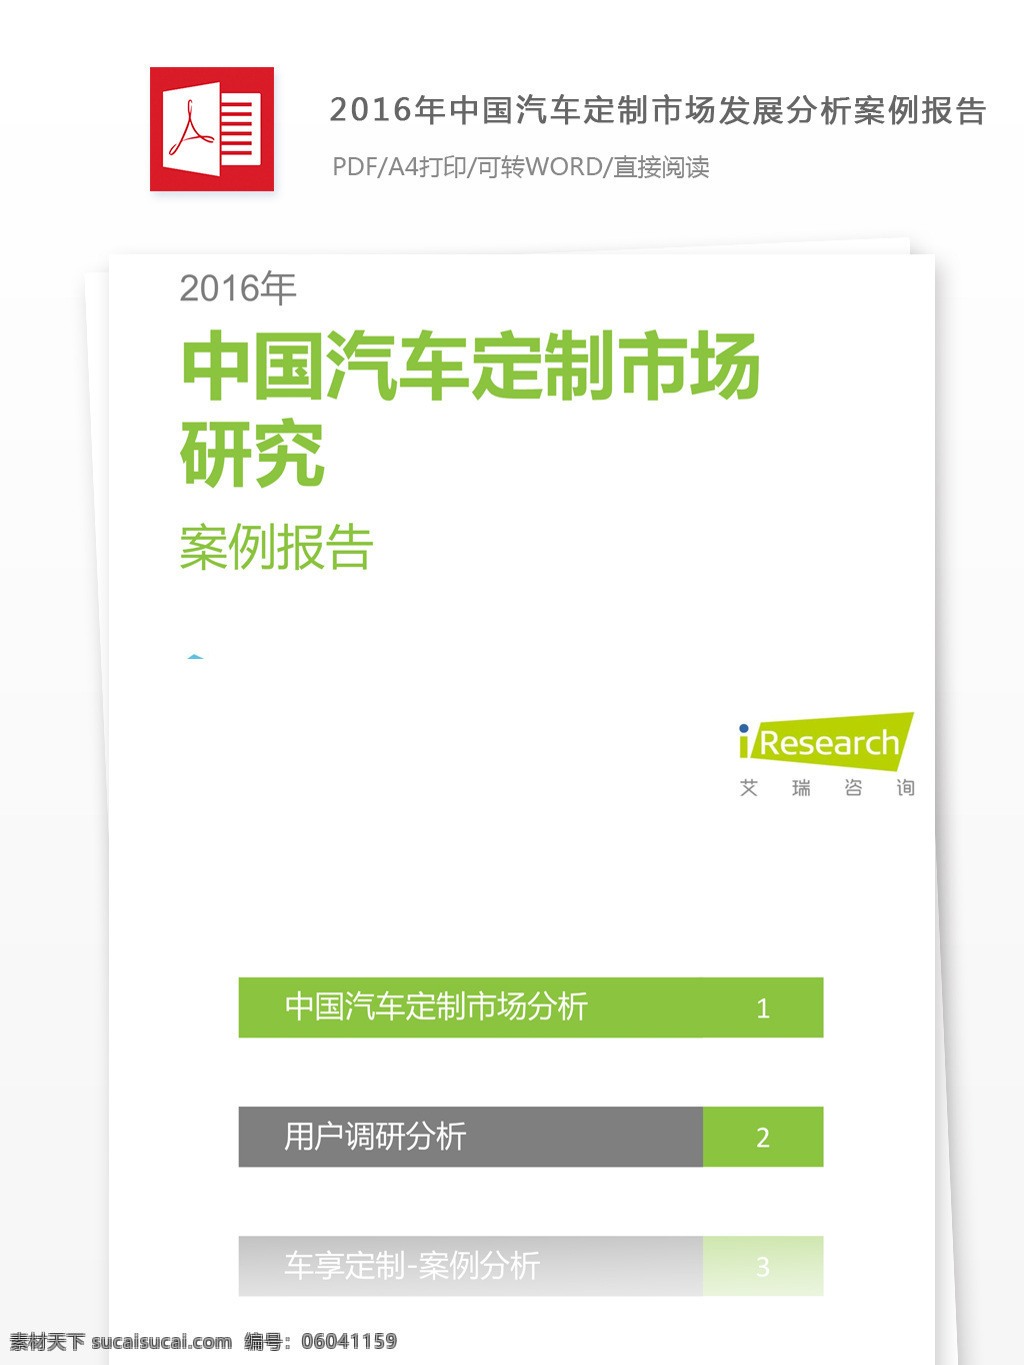 2016 年 中国 汽车 定制 市场 发展 分析 行业分析报告 数据报告 商业报告模板 研究报告